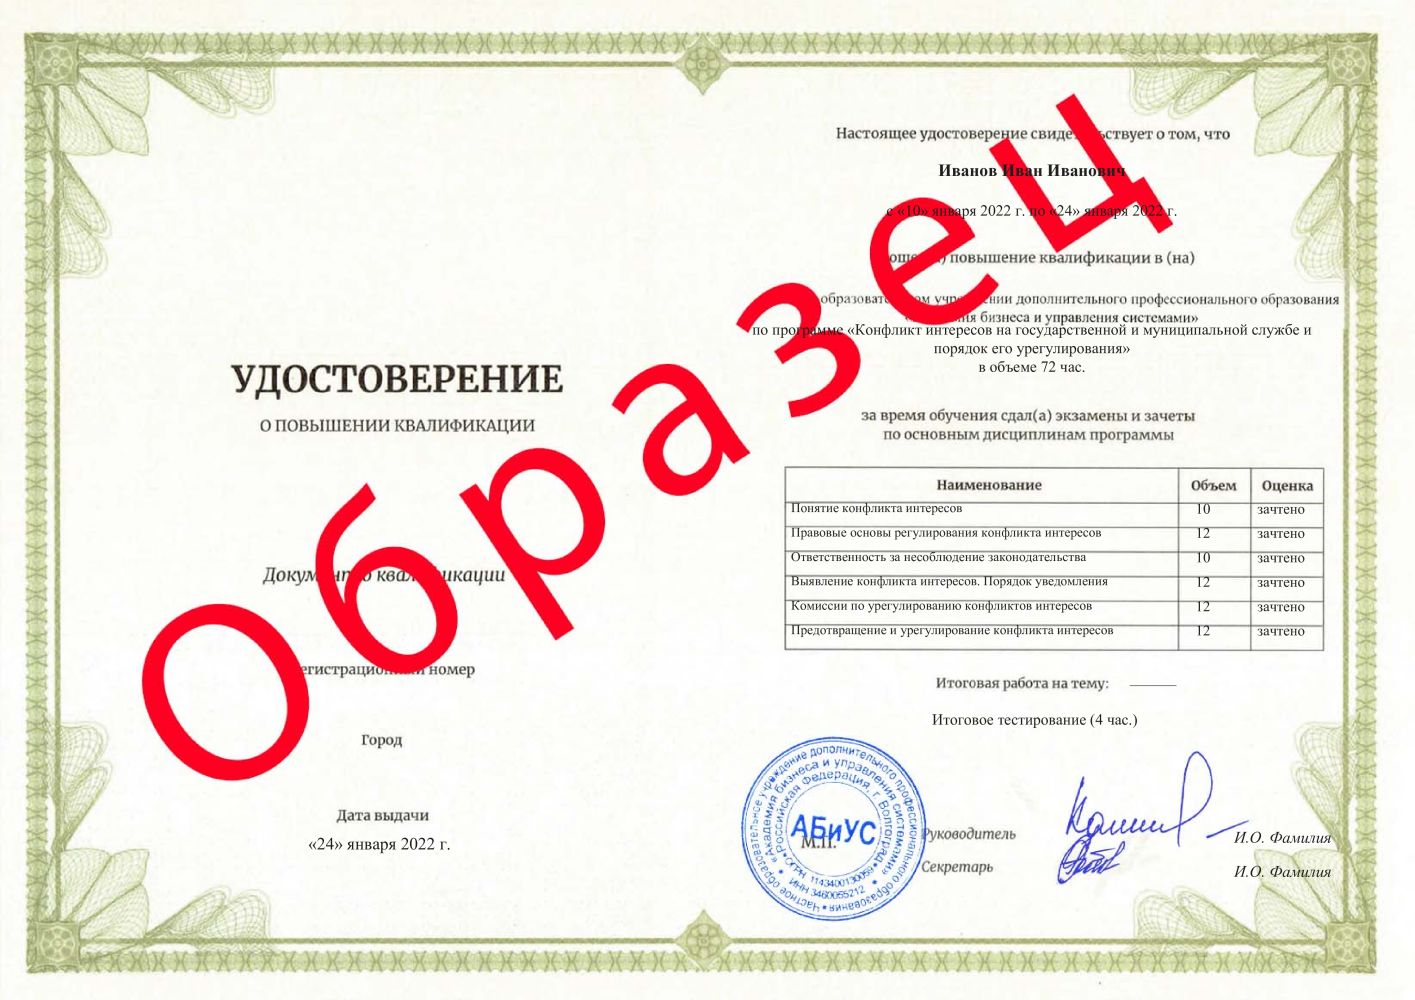 Удостоверение Конфликт интересов на государственной и муниципальной службе и порядок его урегулирования 72 часа 4625 руб.